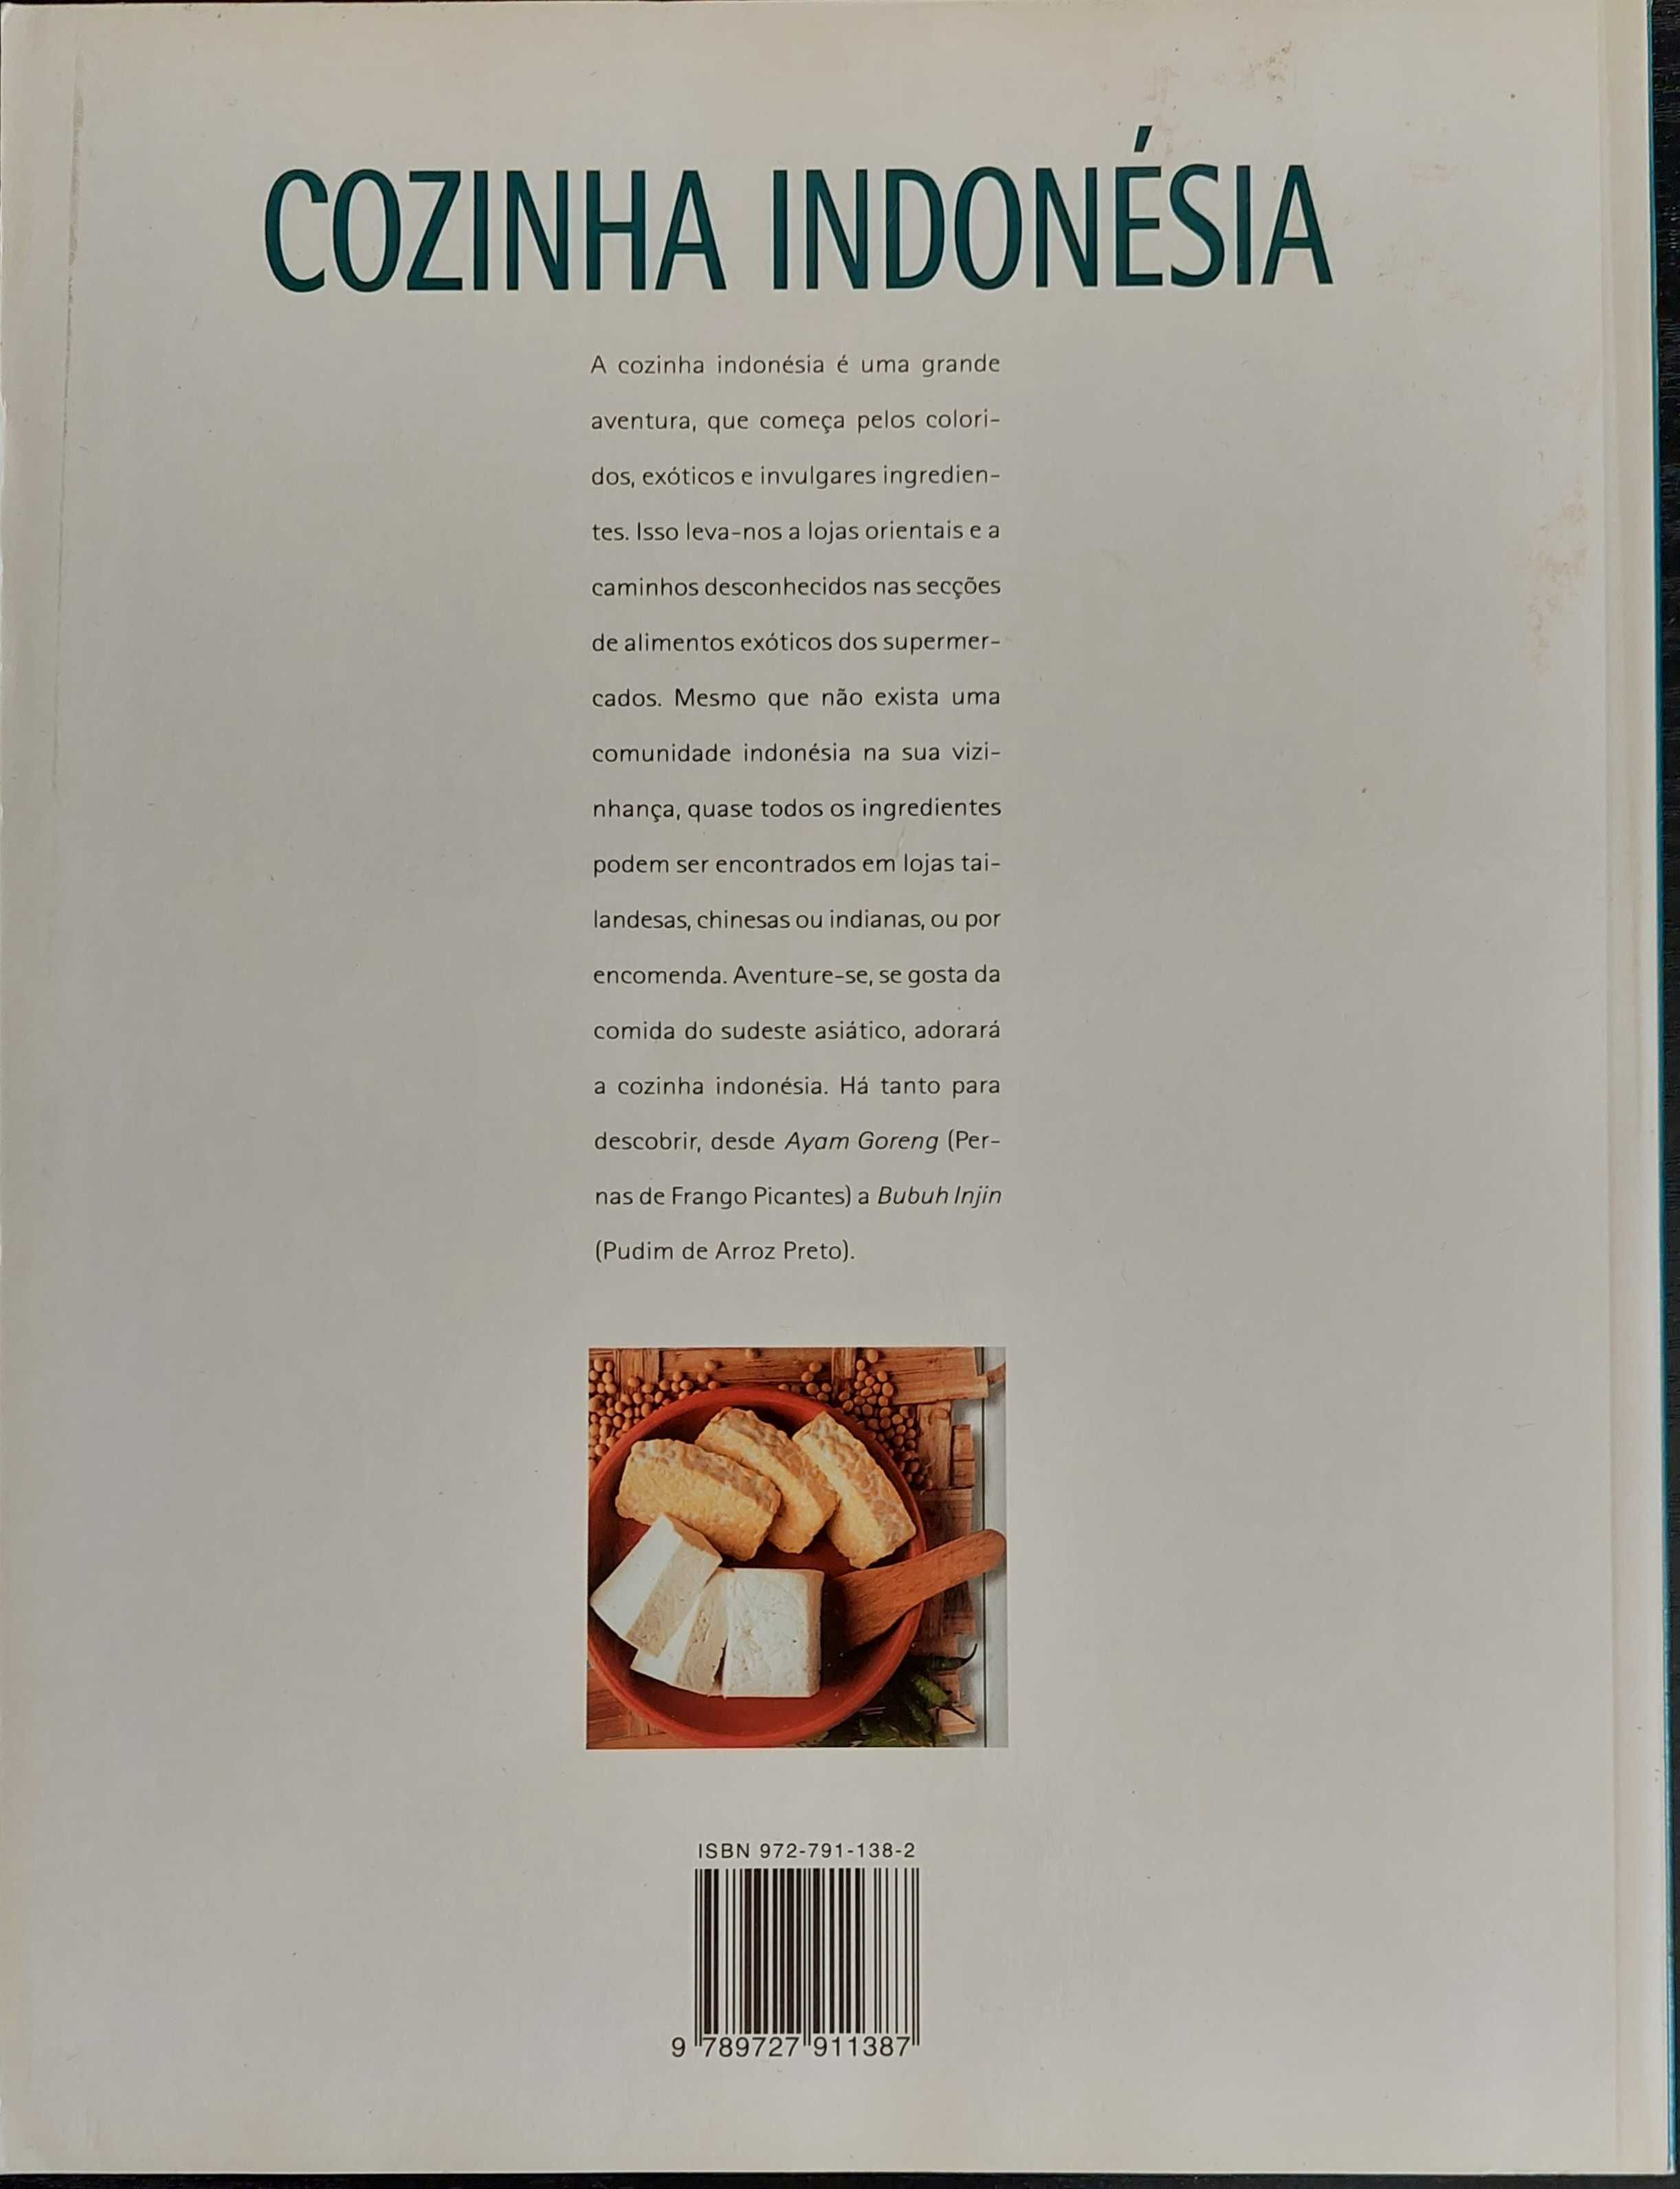 Livro de culinaria, cozinha da indonésia